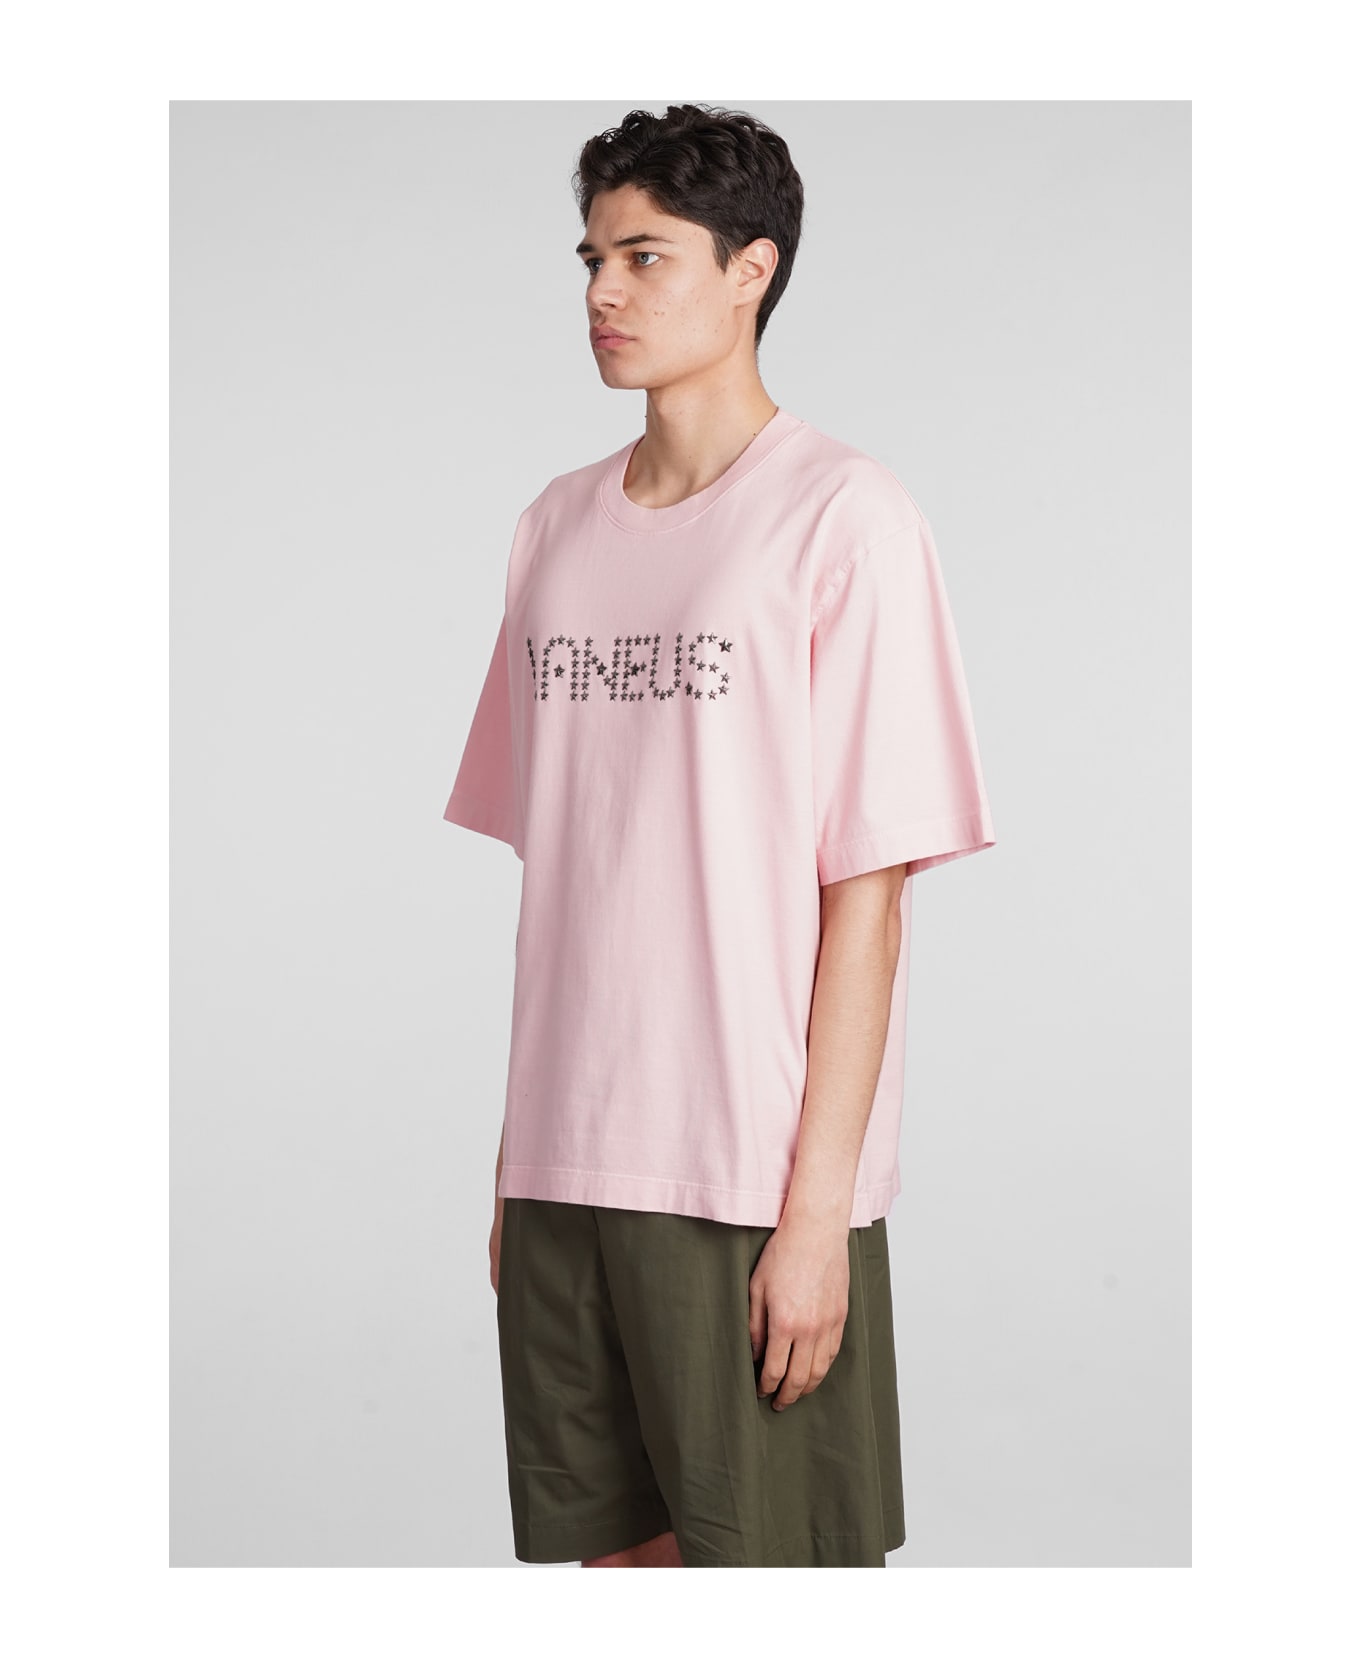 Laneus T-shirt In Rose-pink Cotton - rose-pink シャツ